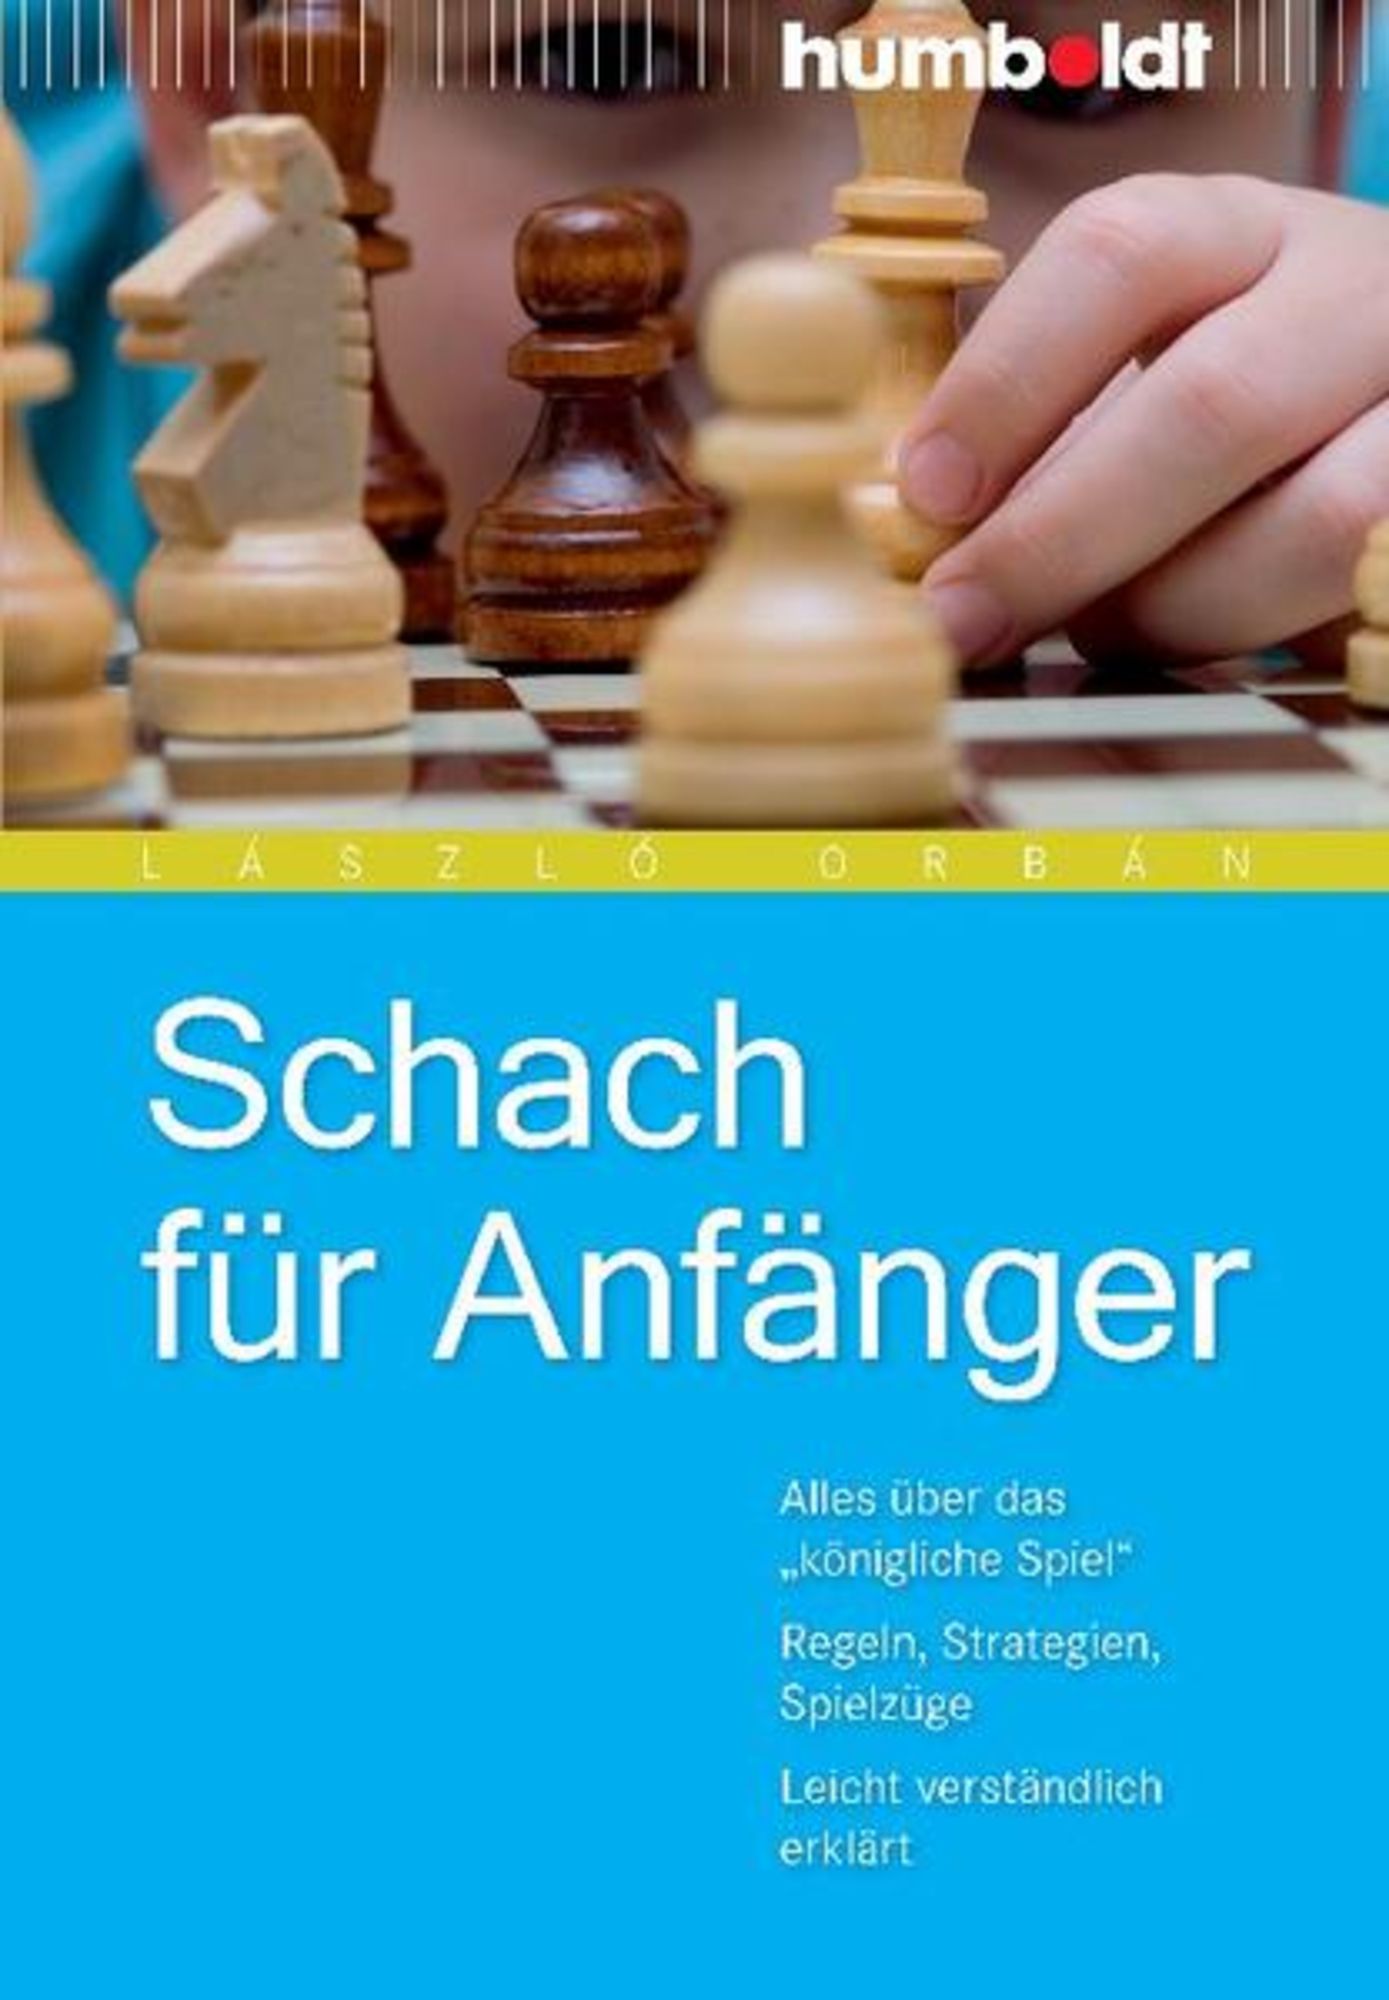 Mit Schach anfangen: unknown author: 9783440056011: : Books